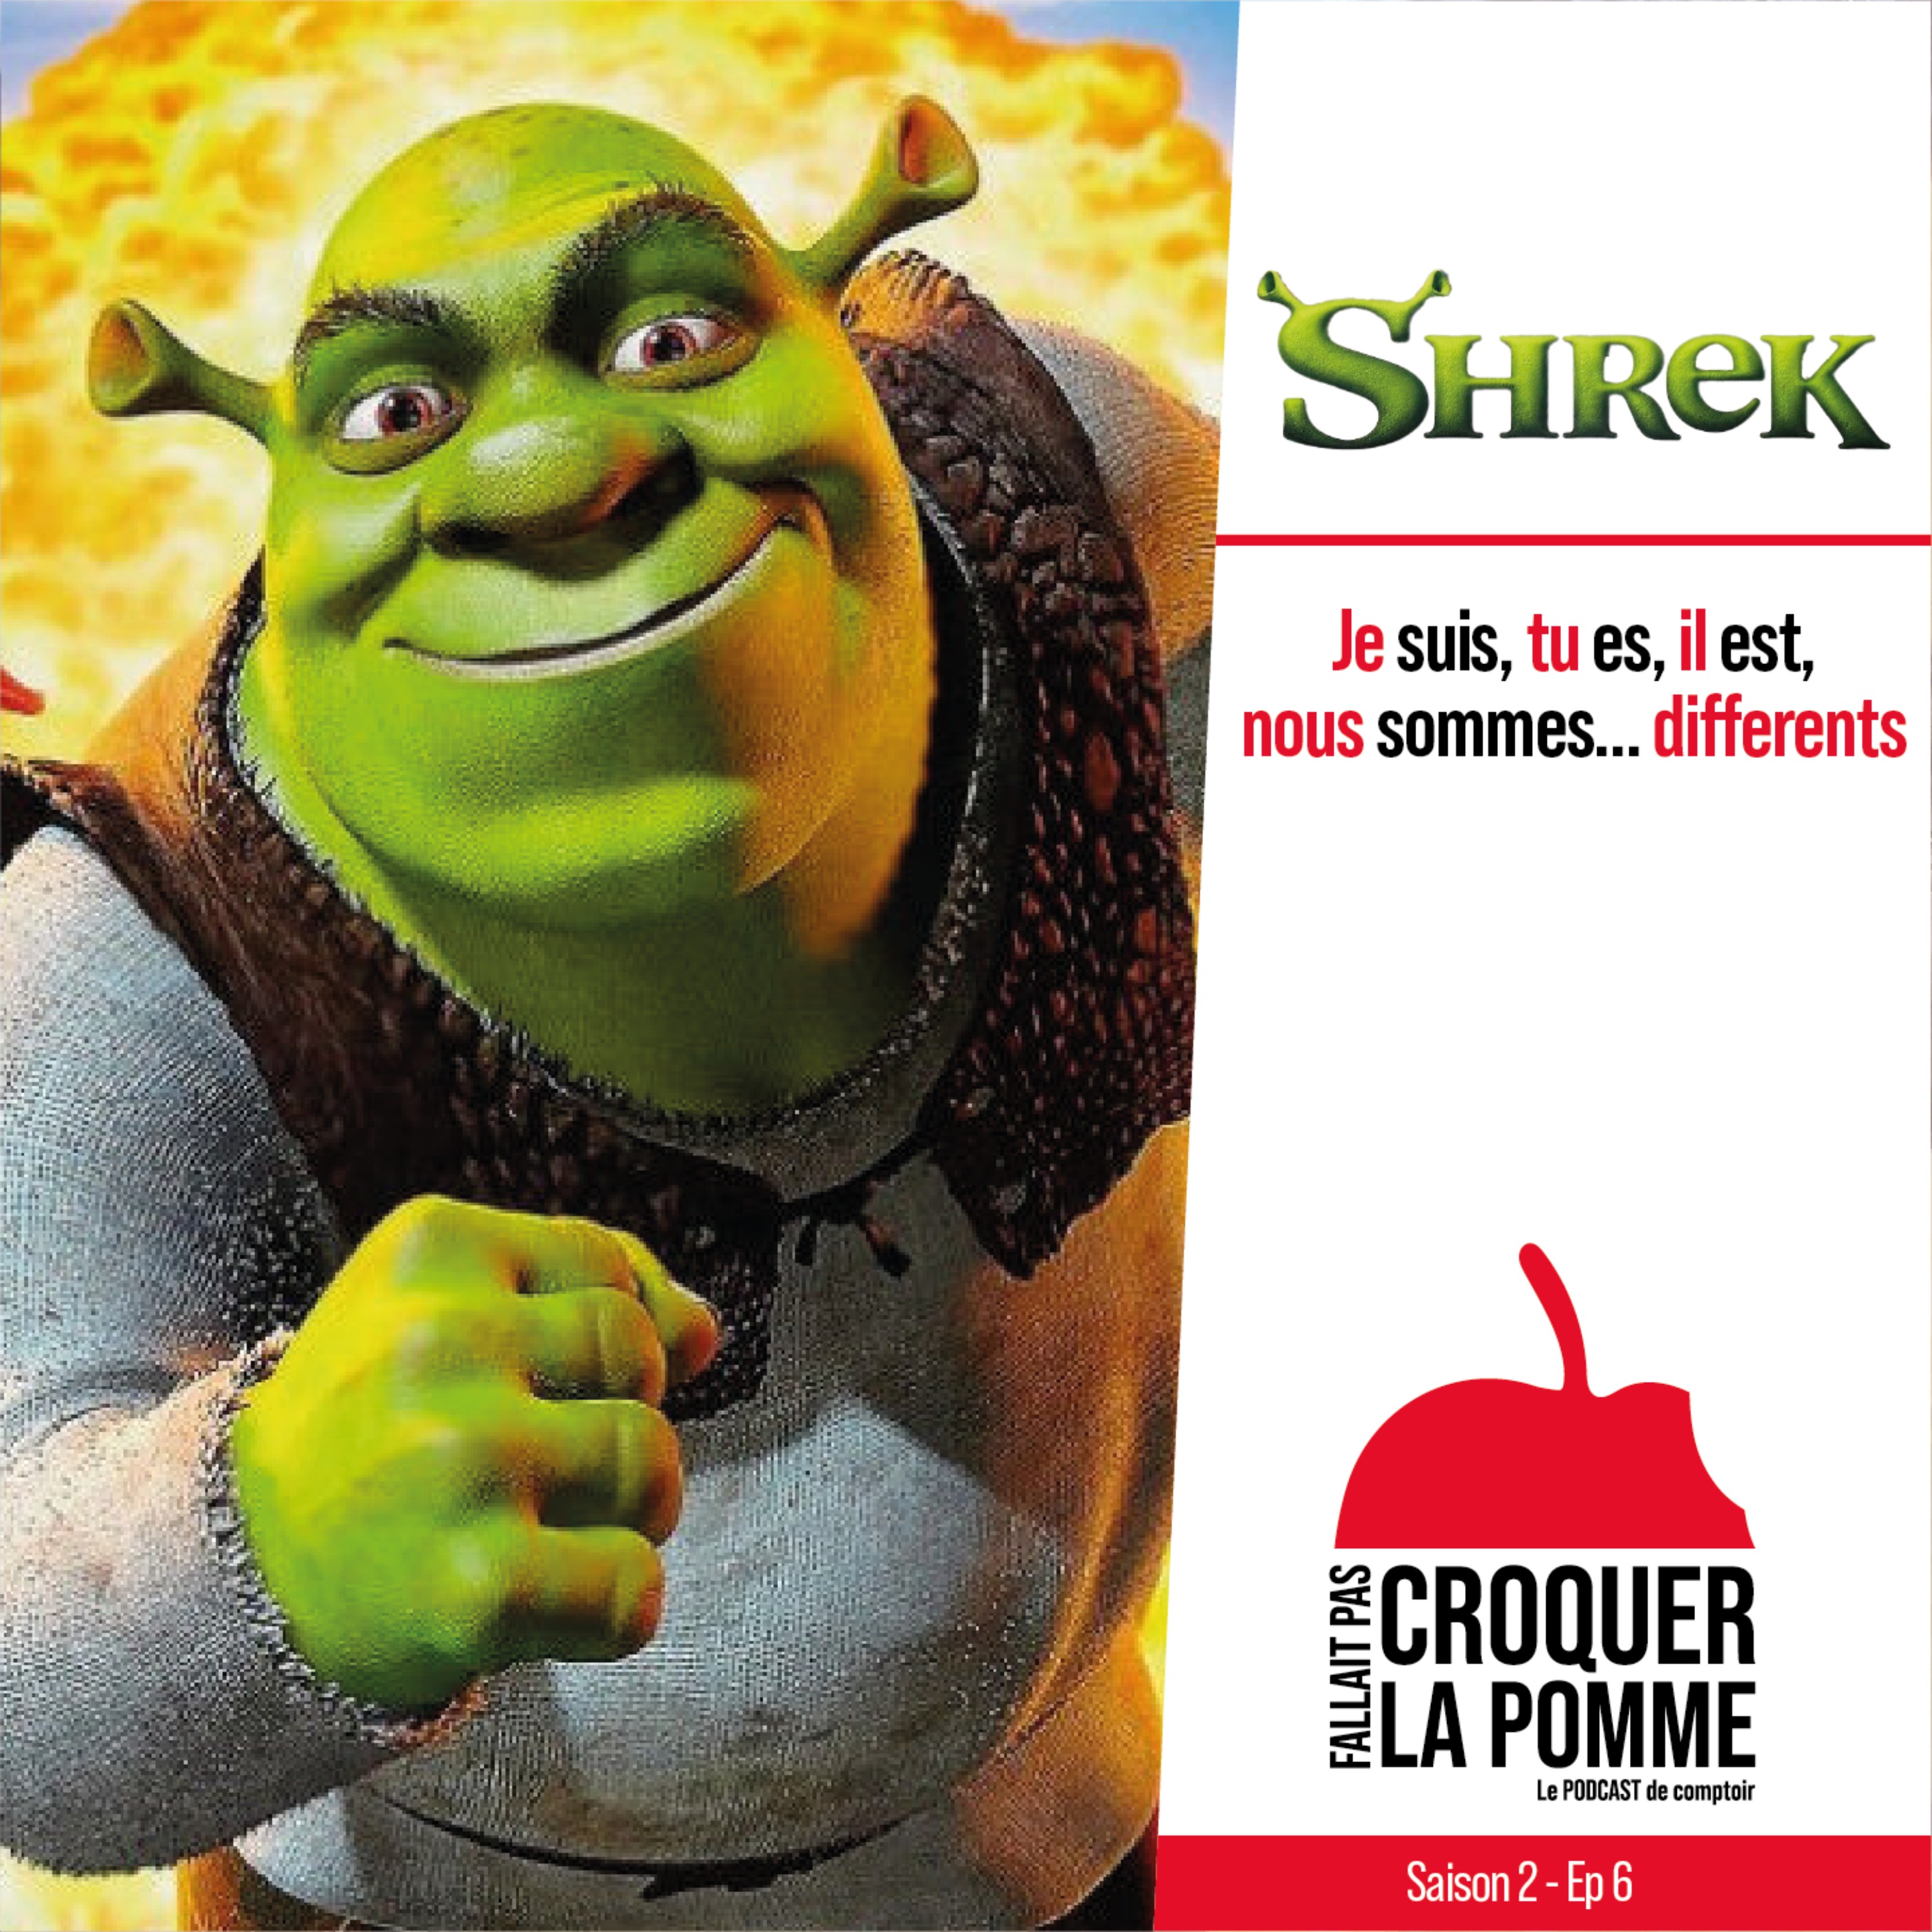 Shrek : Je suis, tu es, il est, nous sommes… Différents